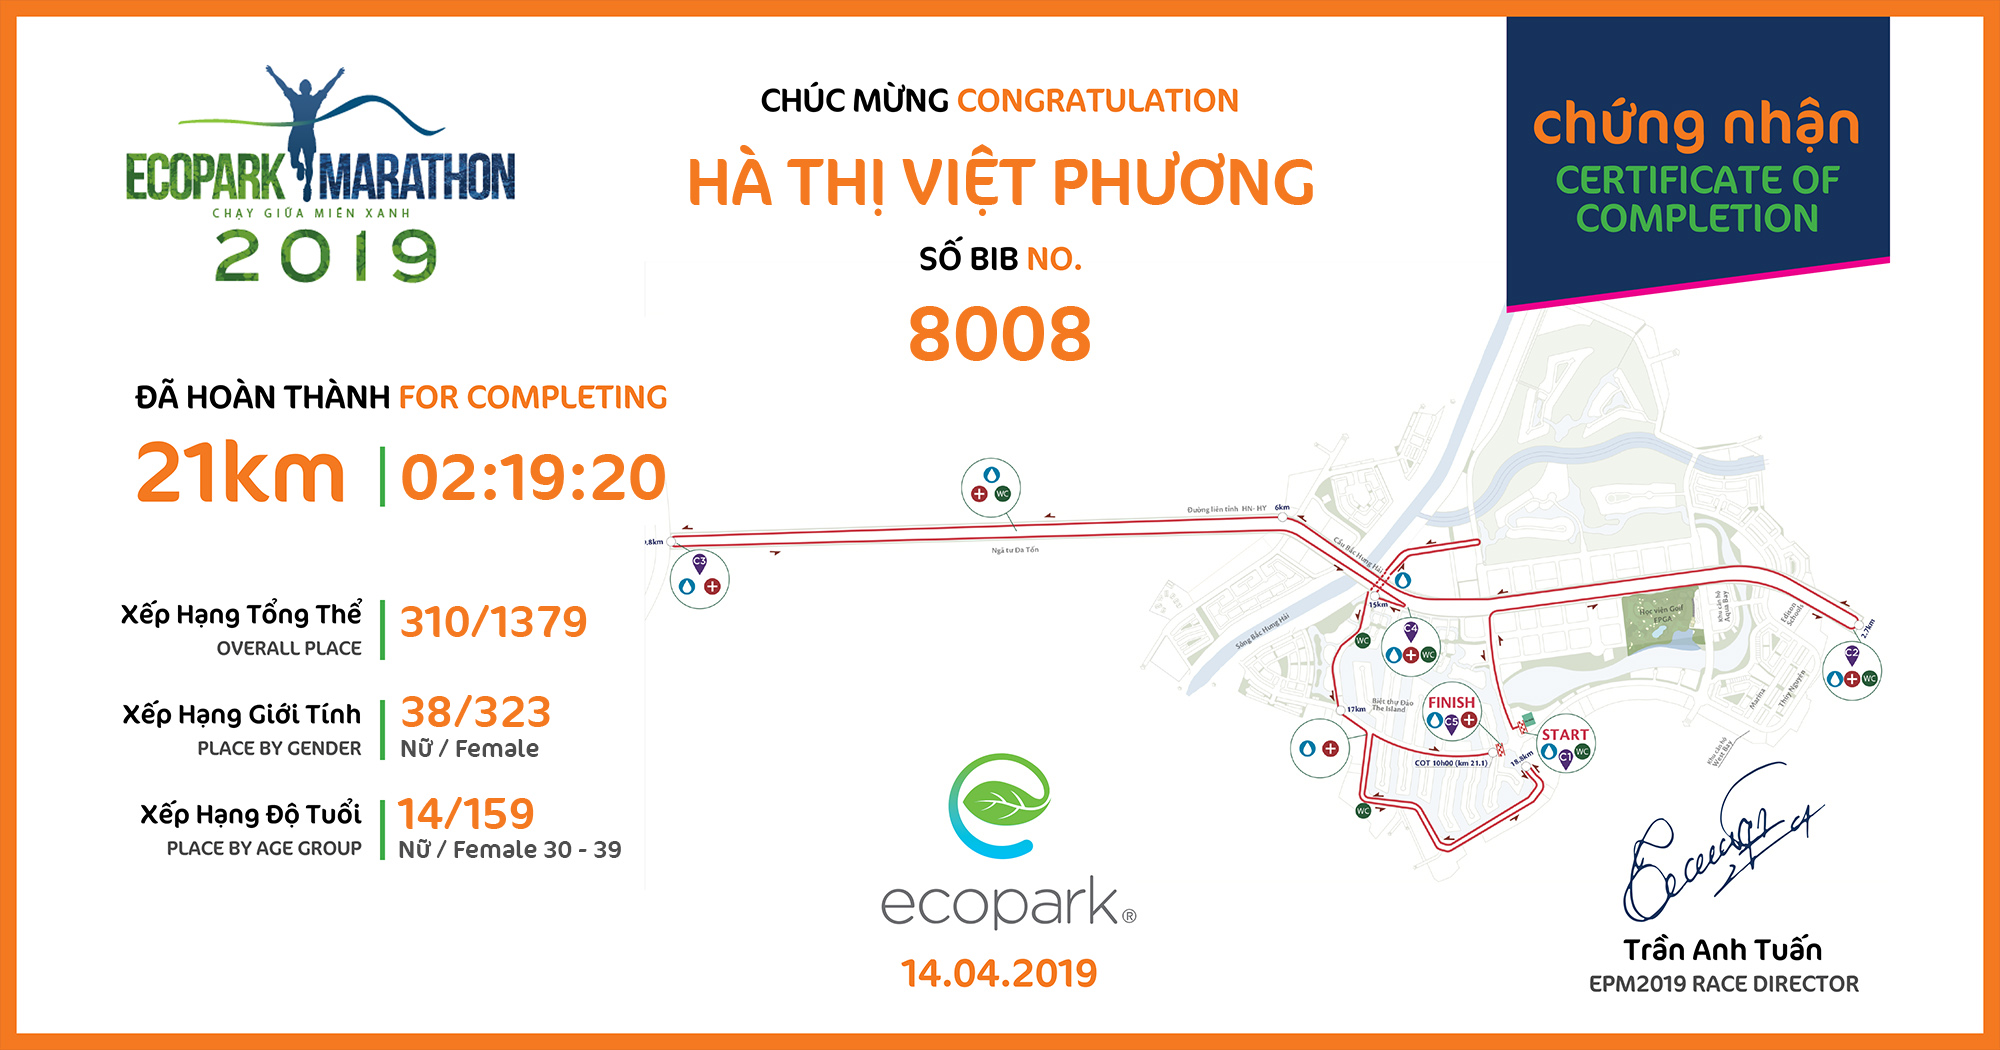 8008 - Hà Thị Việt Phương